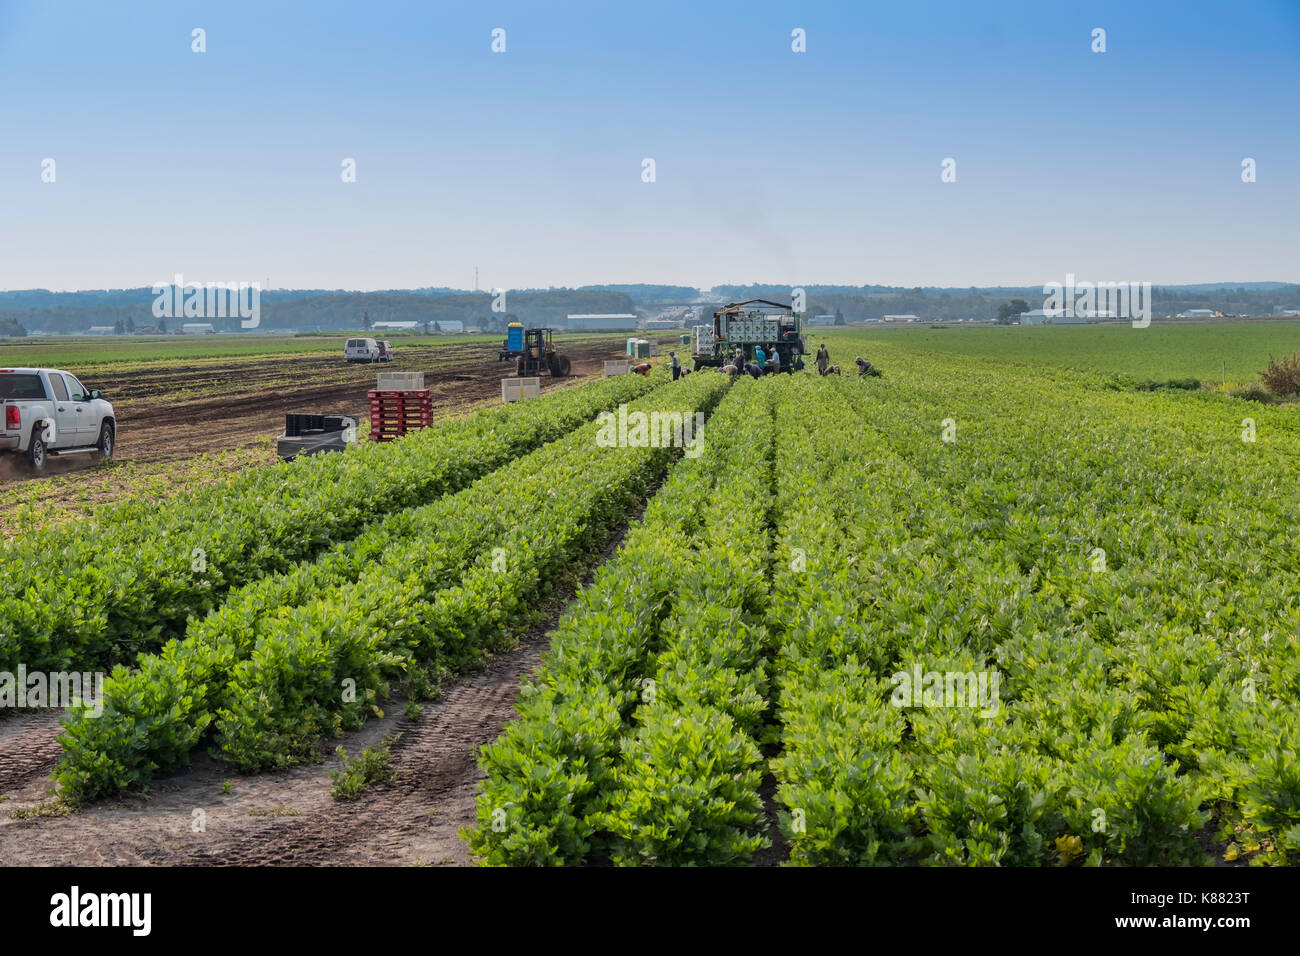 L'agriculture de la récolte de cultures comme l'oignon et le céleri,salade,par les travailleurs migrants près de Toronto,Ontario,Canada, au Holland Marsh. Banque D'Images